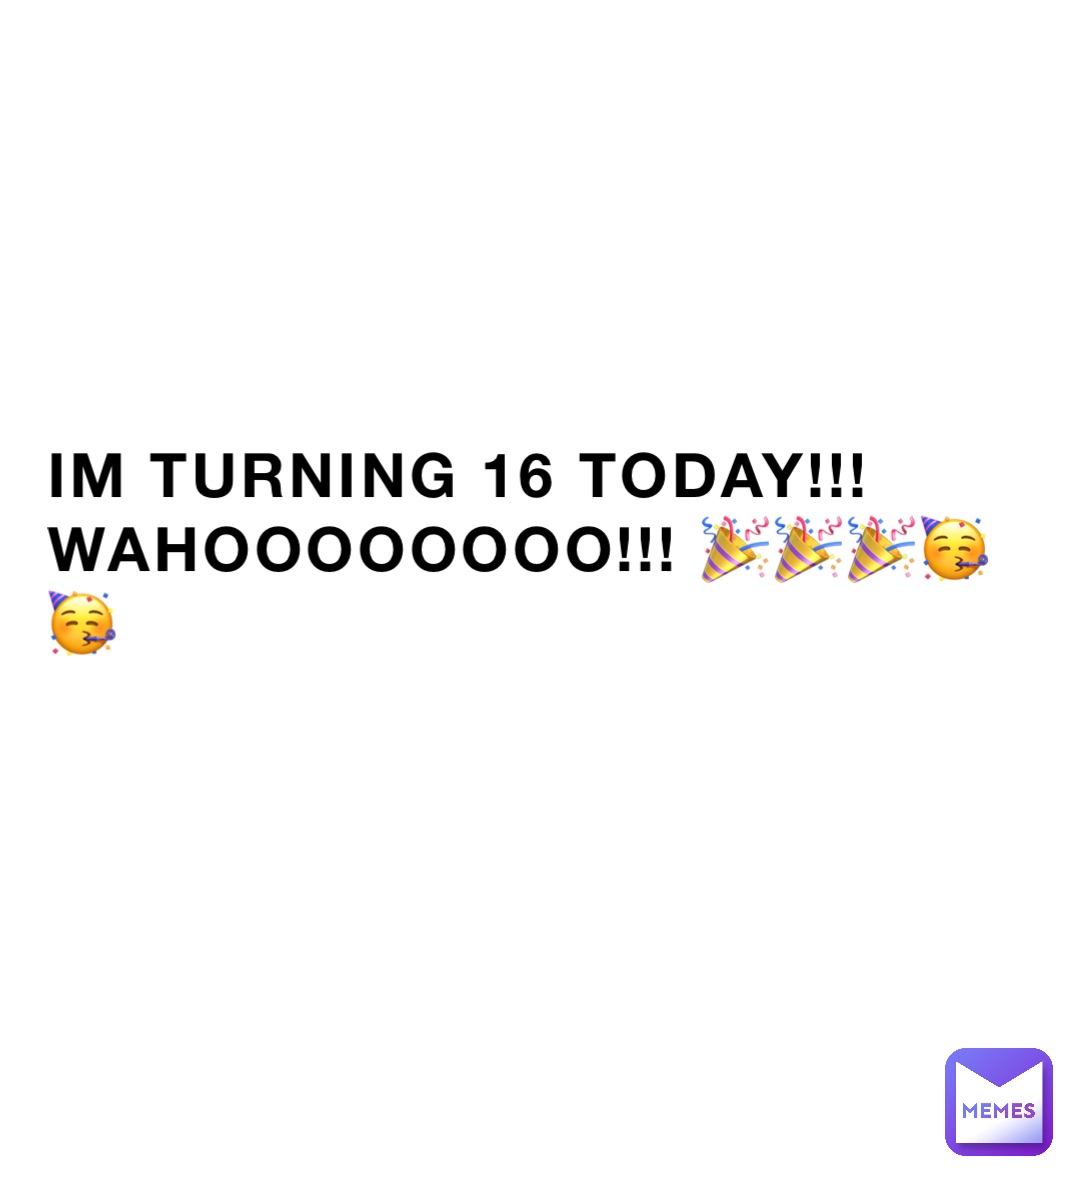 IM TURNING 16 TODAY!!! WAHOOOOOOOO!!! 🎉🎉🎉🥳🥳